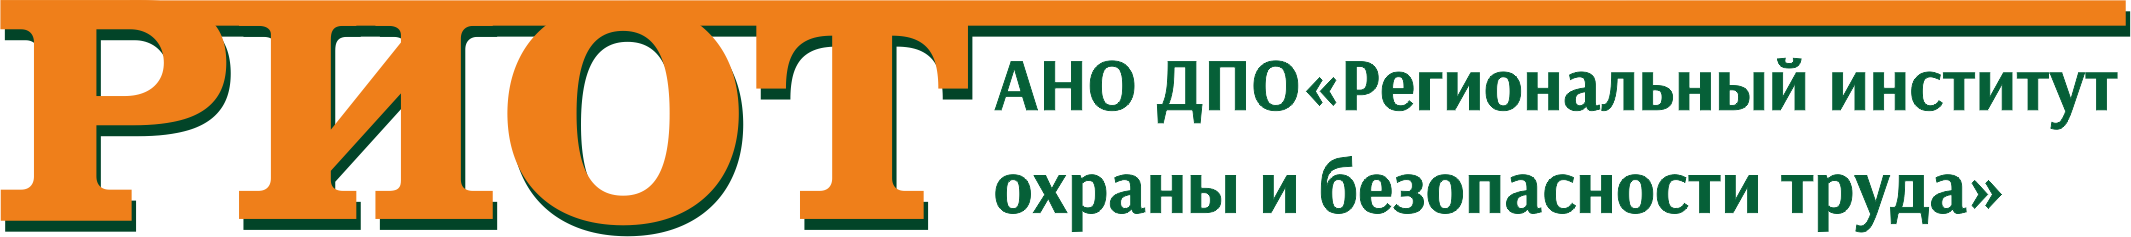 Лого компании АНО ДПО «Региональный институт охраны и безопасности труда» («РИОТ»)